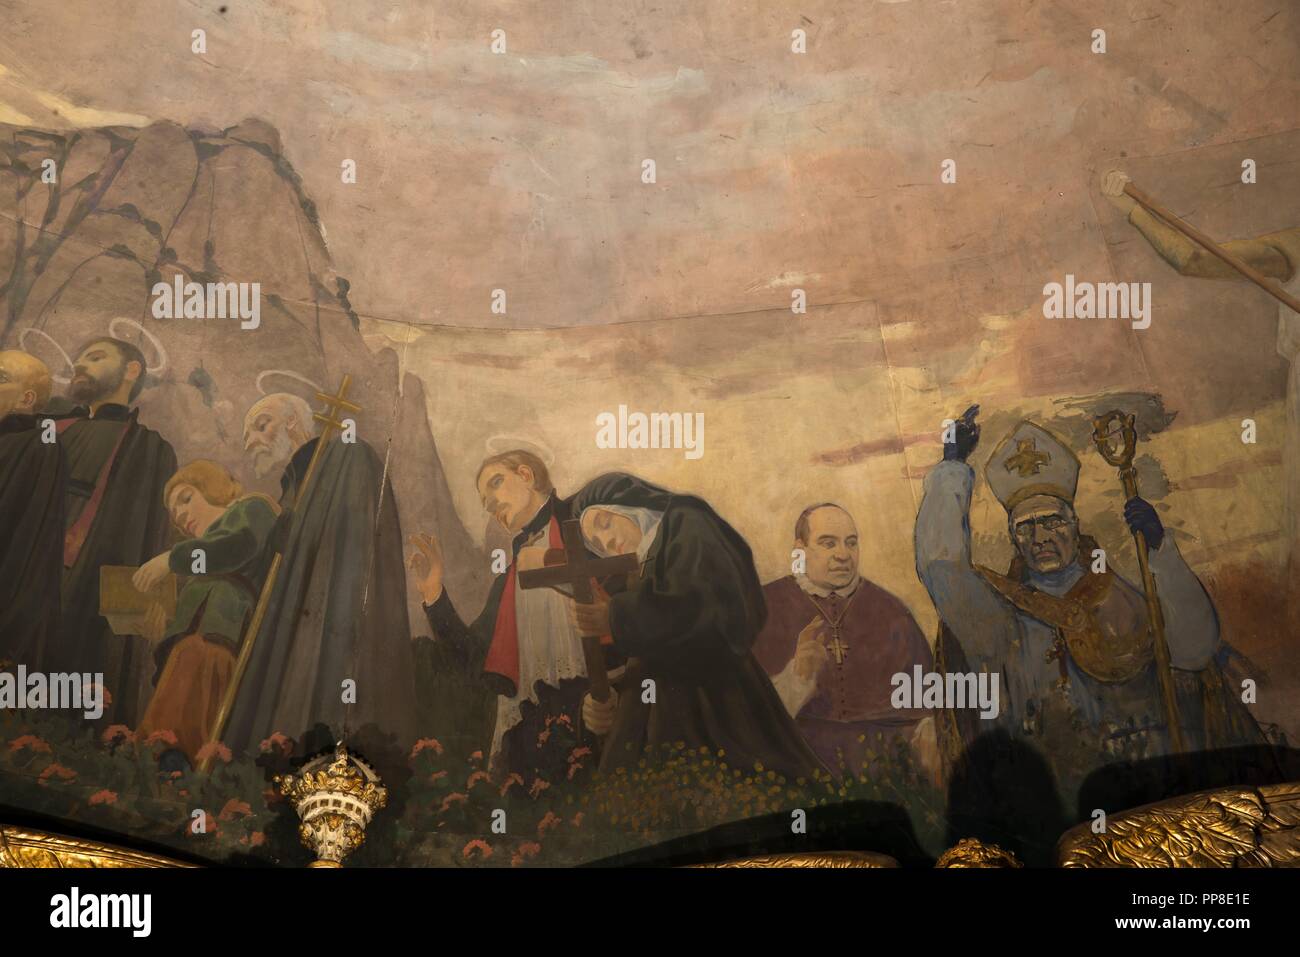 Detalle del Apoteosis de la Virgen, 1896-1898. Pintura murale de la cúpula del cambril de la Virgen. Monasterio de Montserrat. Cataluña. Auteur : LLIMONA, JOAN. Banque D'Images